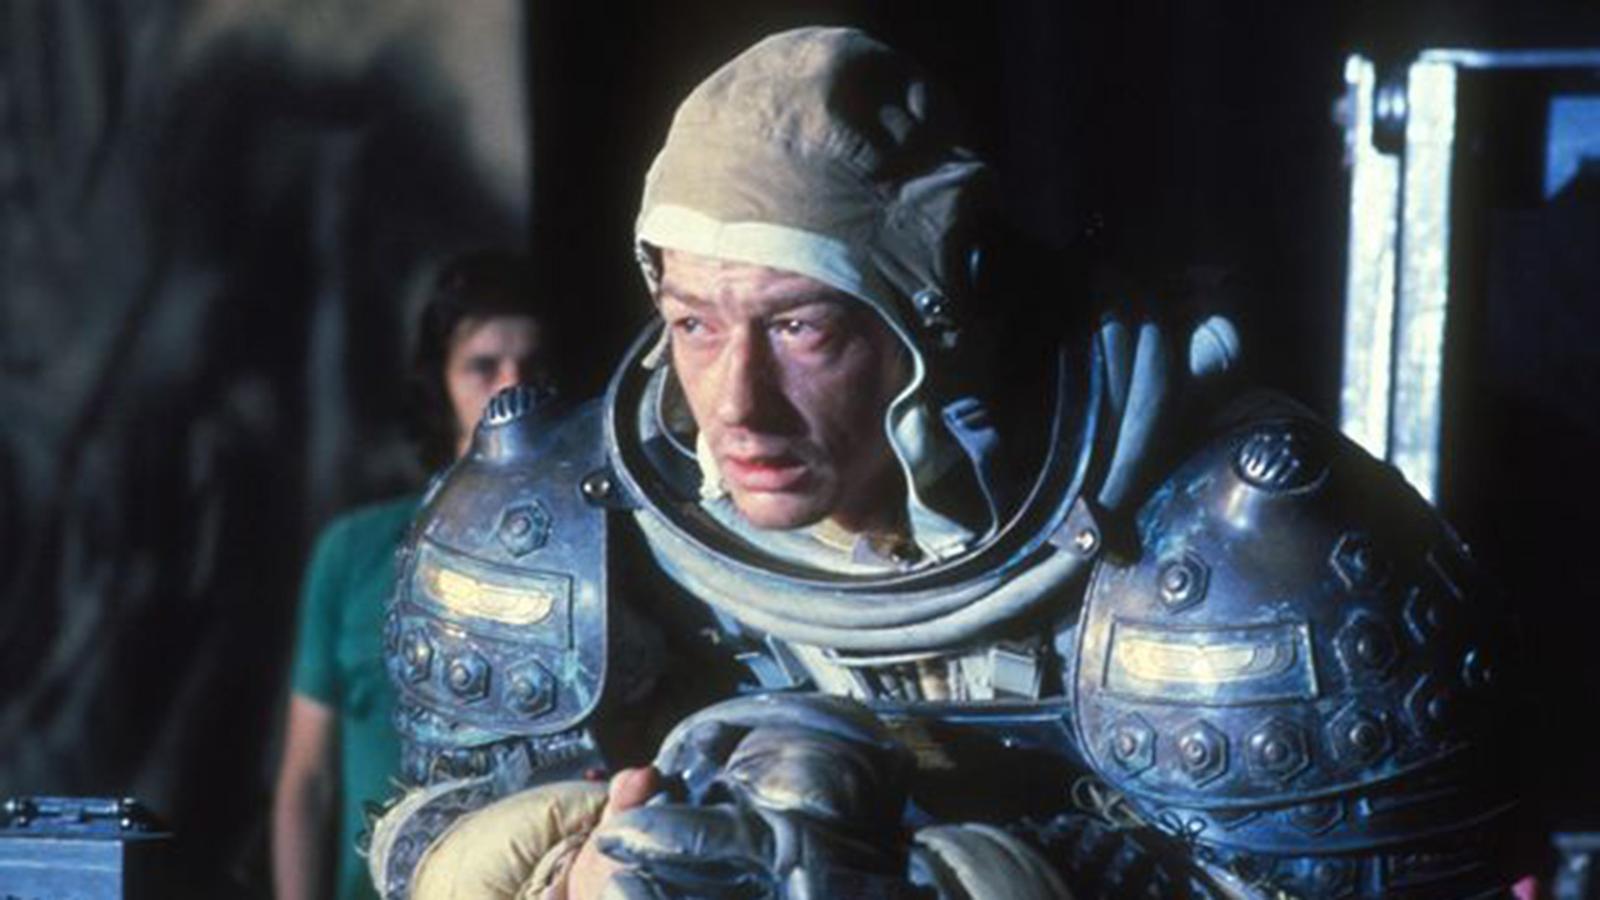 En 1979, en «Alien, el octavo pasajero», de Ridley Scott, John Hurt interpretó a Kane, miembro de la tripulación encabezada por la actriz Sigourney Weaver. La escena del monstruoso alienígena saliéndole del estómago es una de las más icónicas de la historia del cine de ciencia ficción